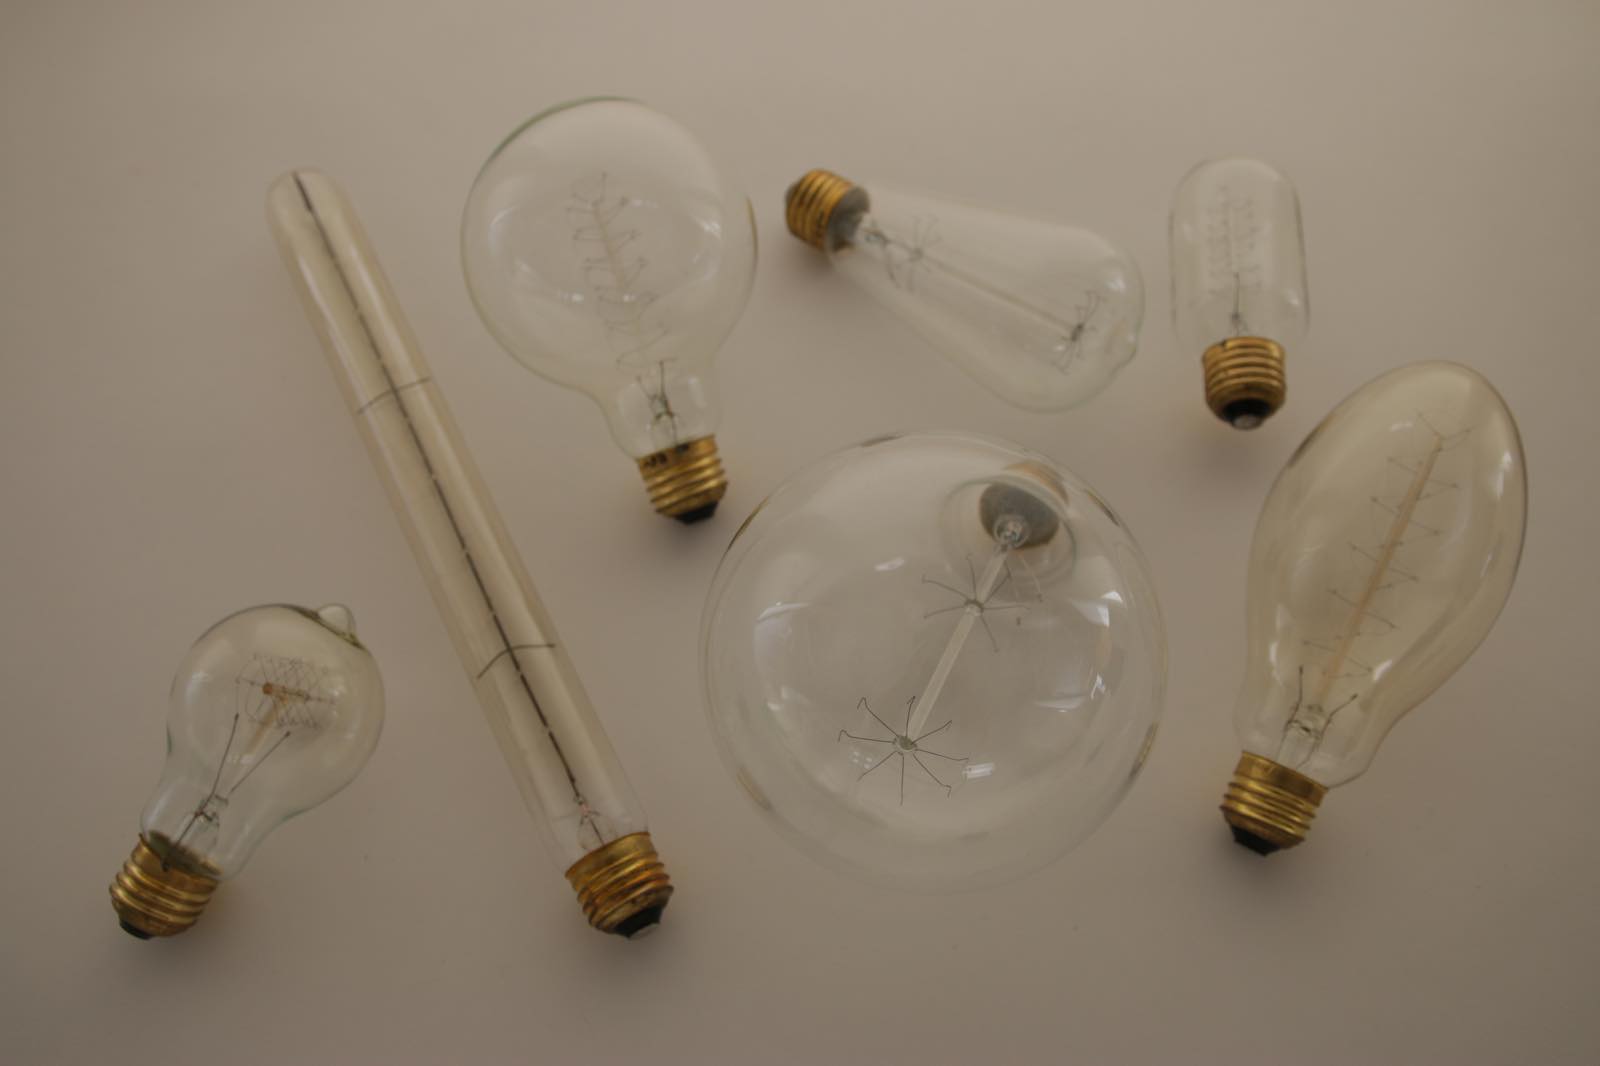 白熱アート電球 白熱エジソン(E26)40W LT-BB004-03-G141 気分によって付け替えたりして楽しむのもgood！